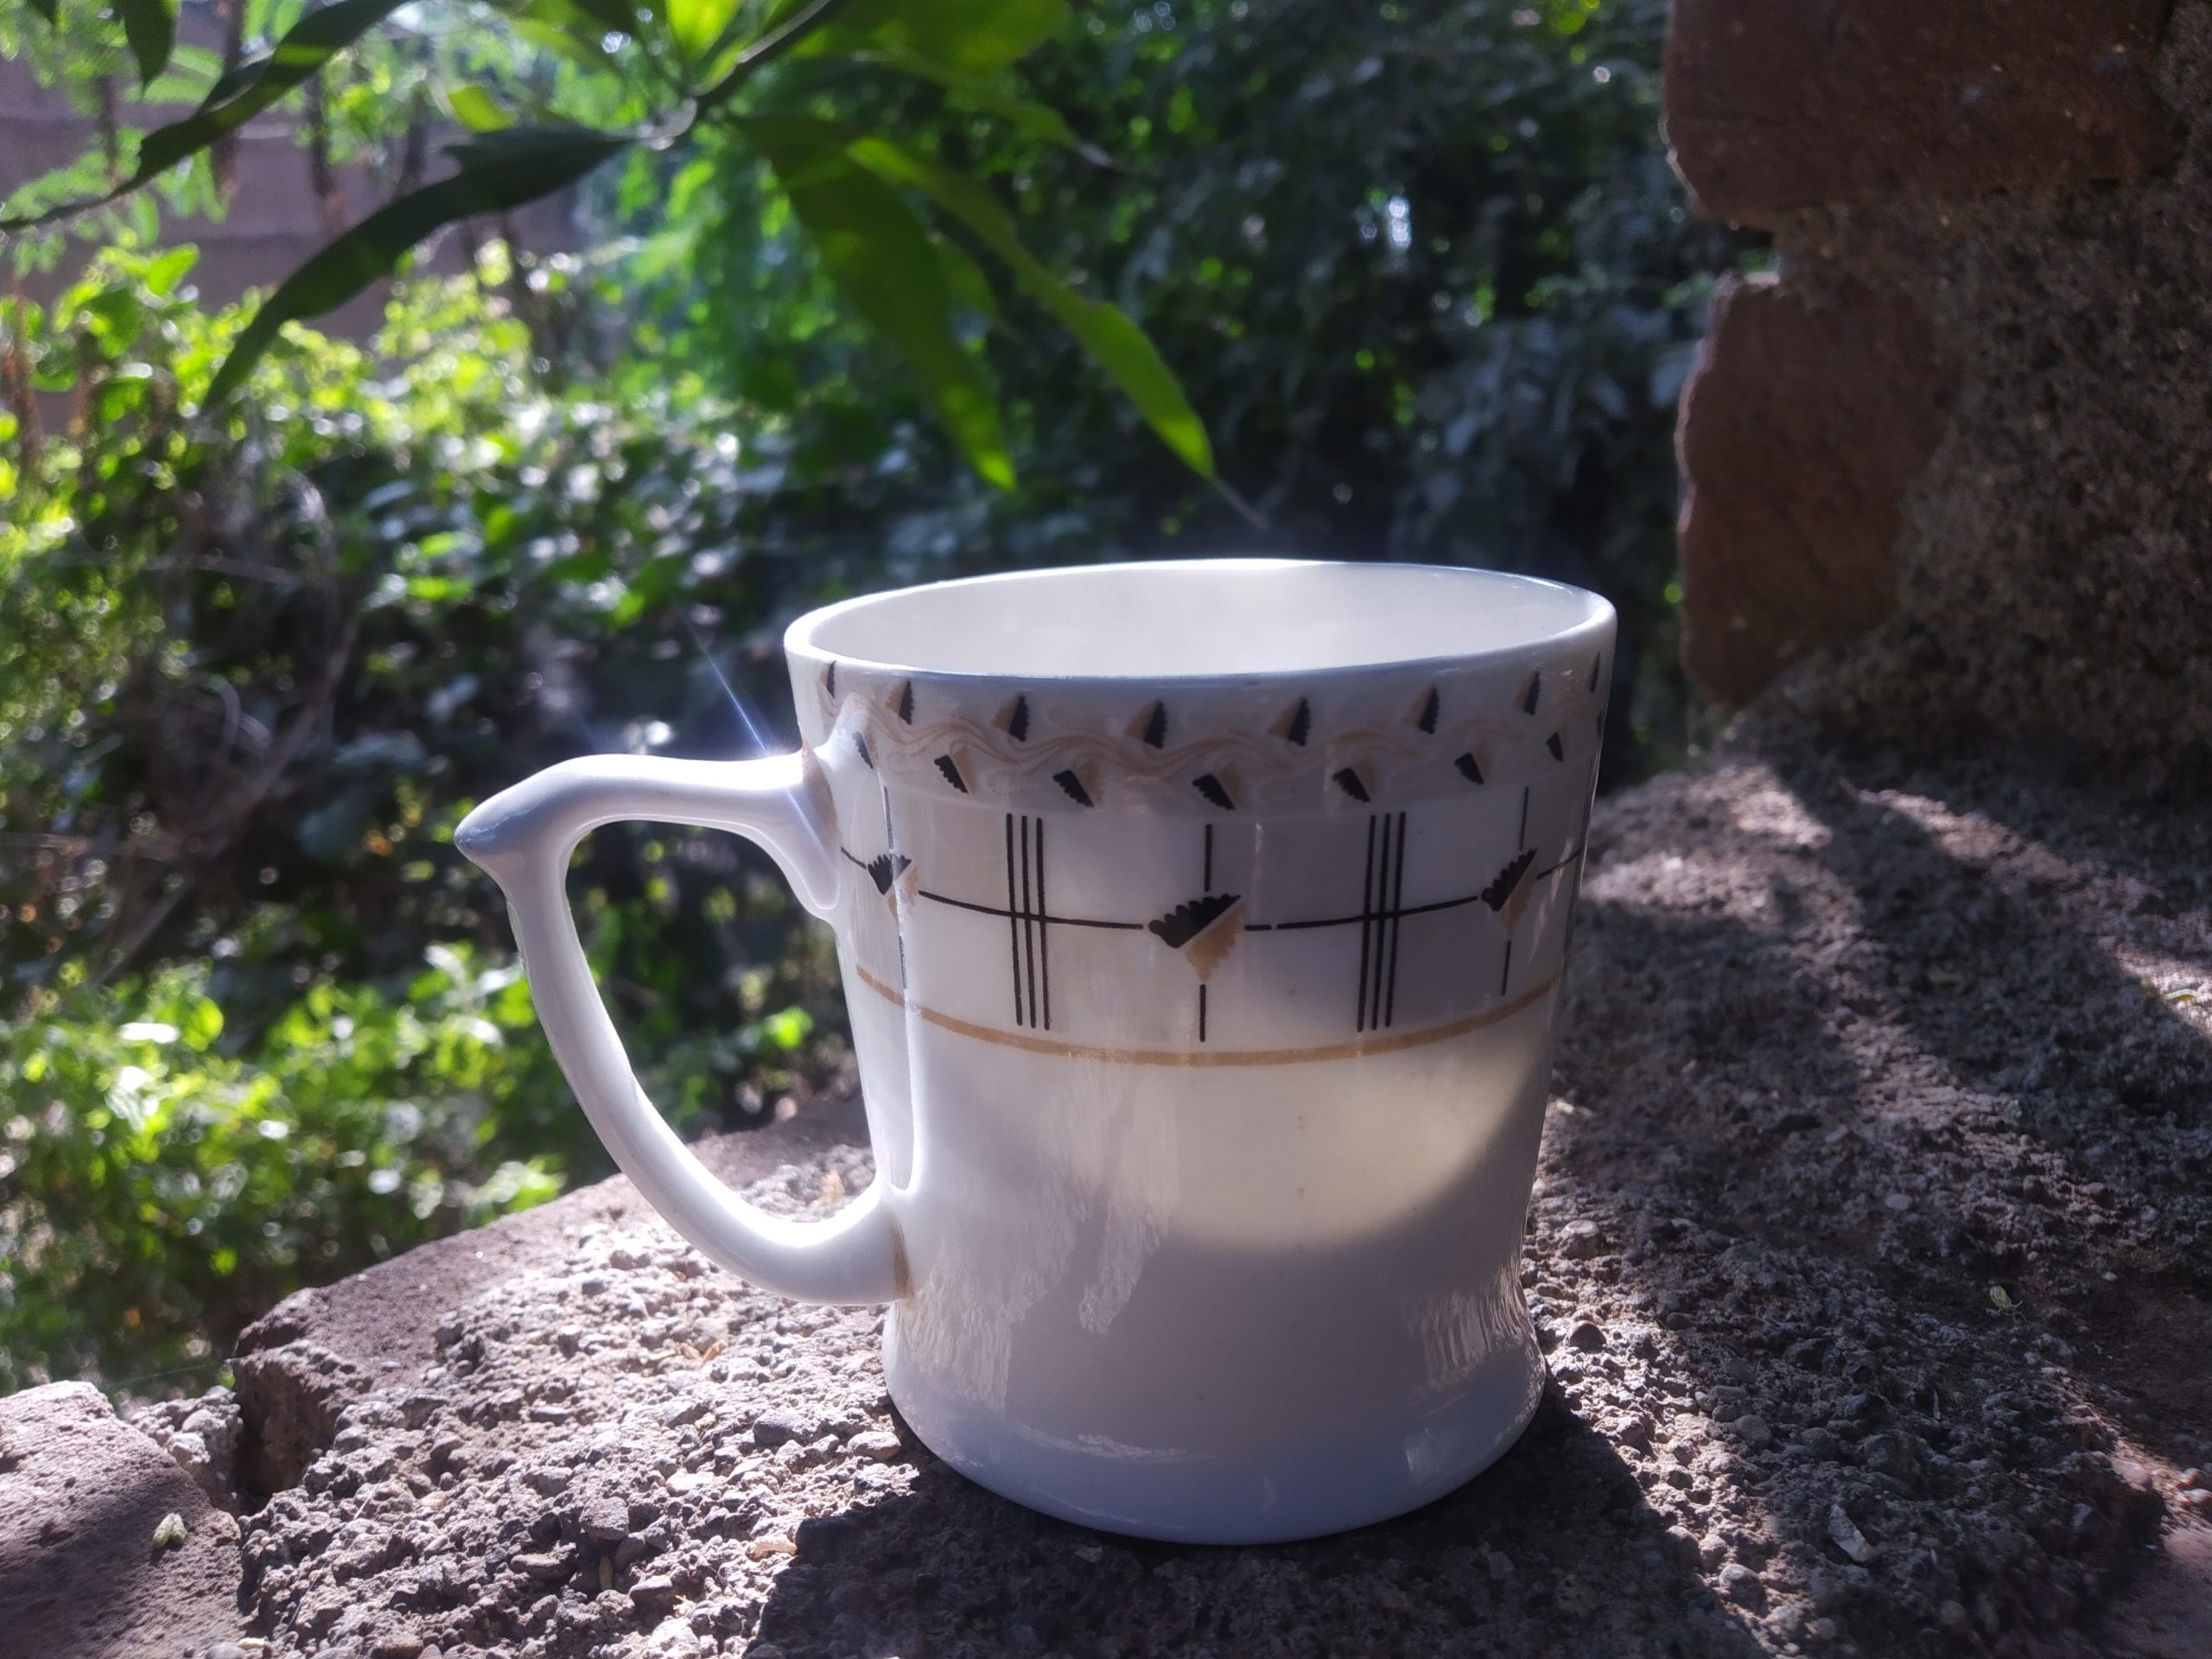 A ceramic cup